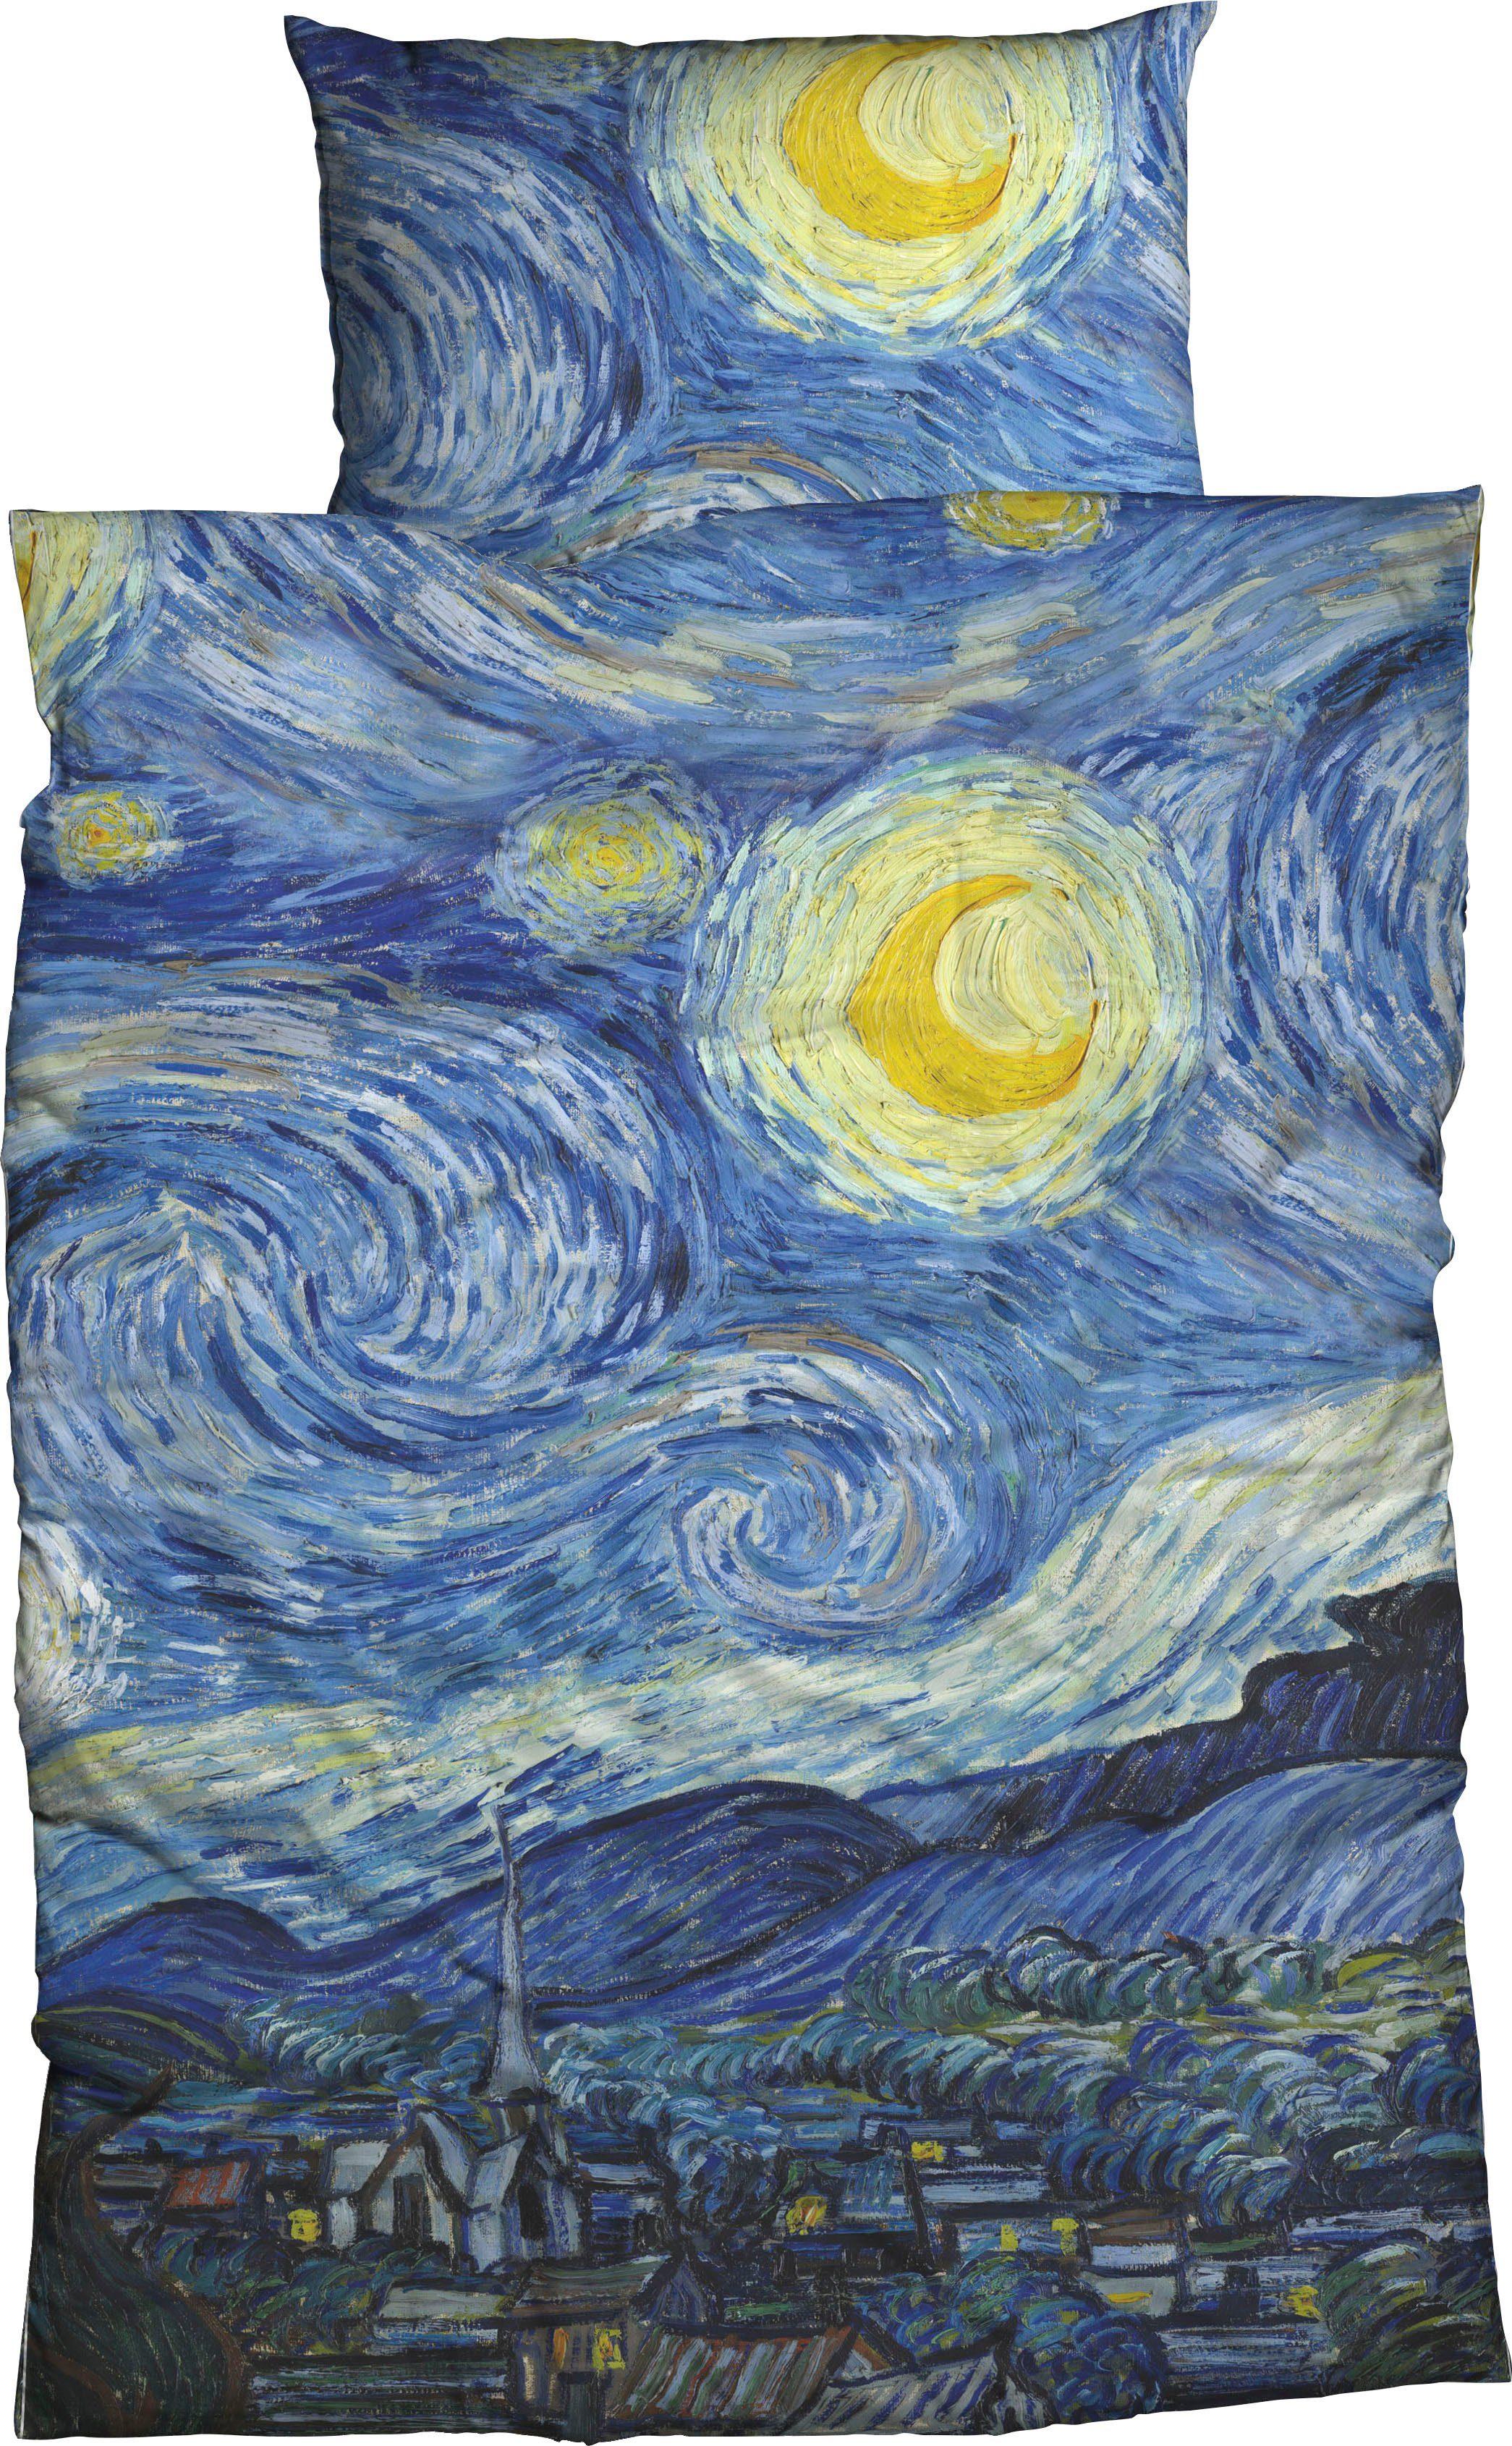 Bettwäsche Starry Night, Goebel, Satin, 2 teilig, geniales Design von Vincent van Gogh